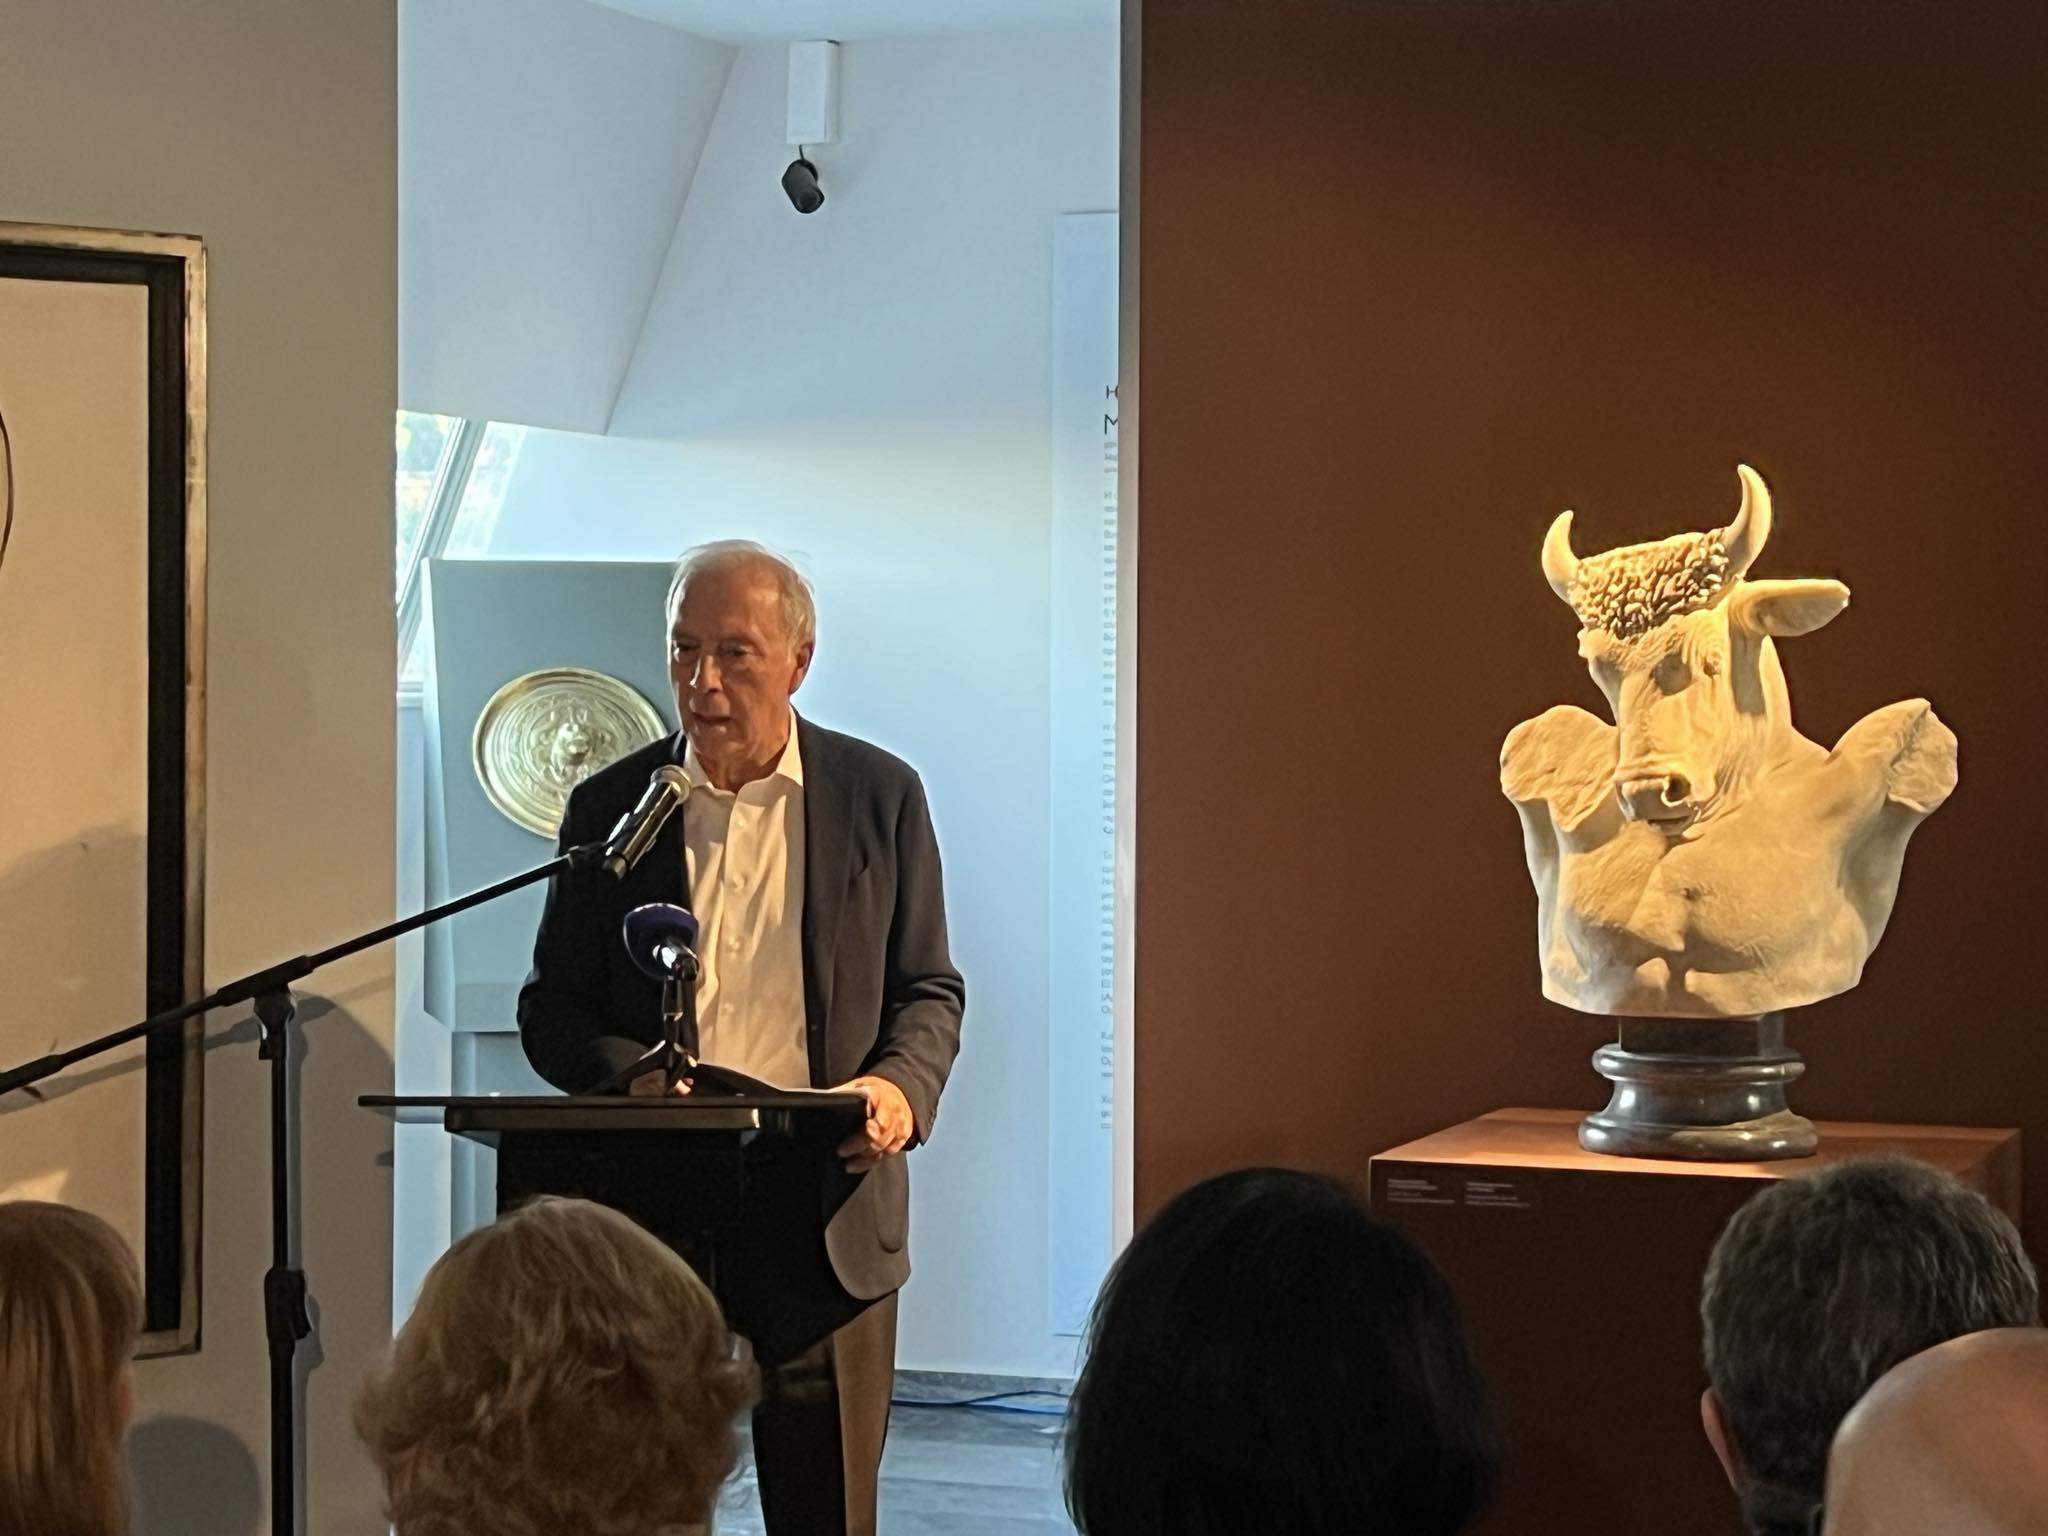 Η Χαρά της Ζωής: Μία συγκλονιστική έκθεση που αποκαλύπτει την καταλυτική επιρροή της Ελλάδας στο έργο του Πικάσο